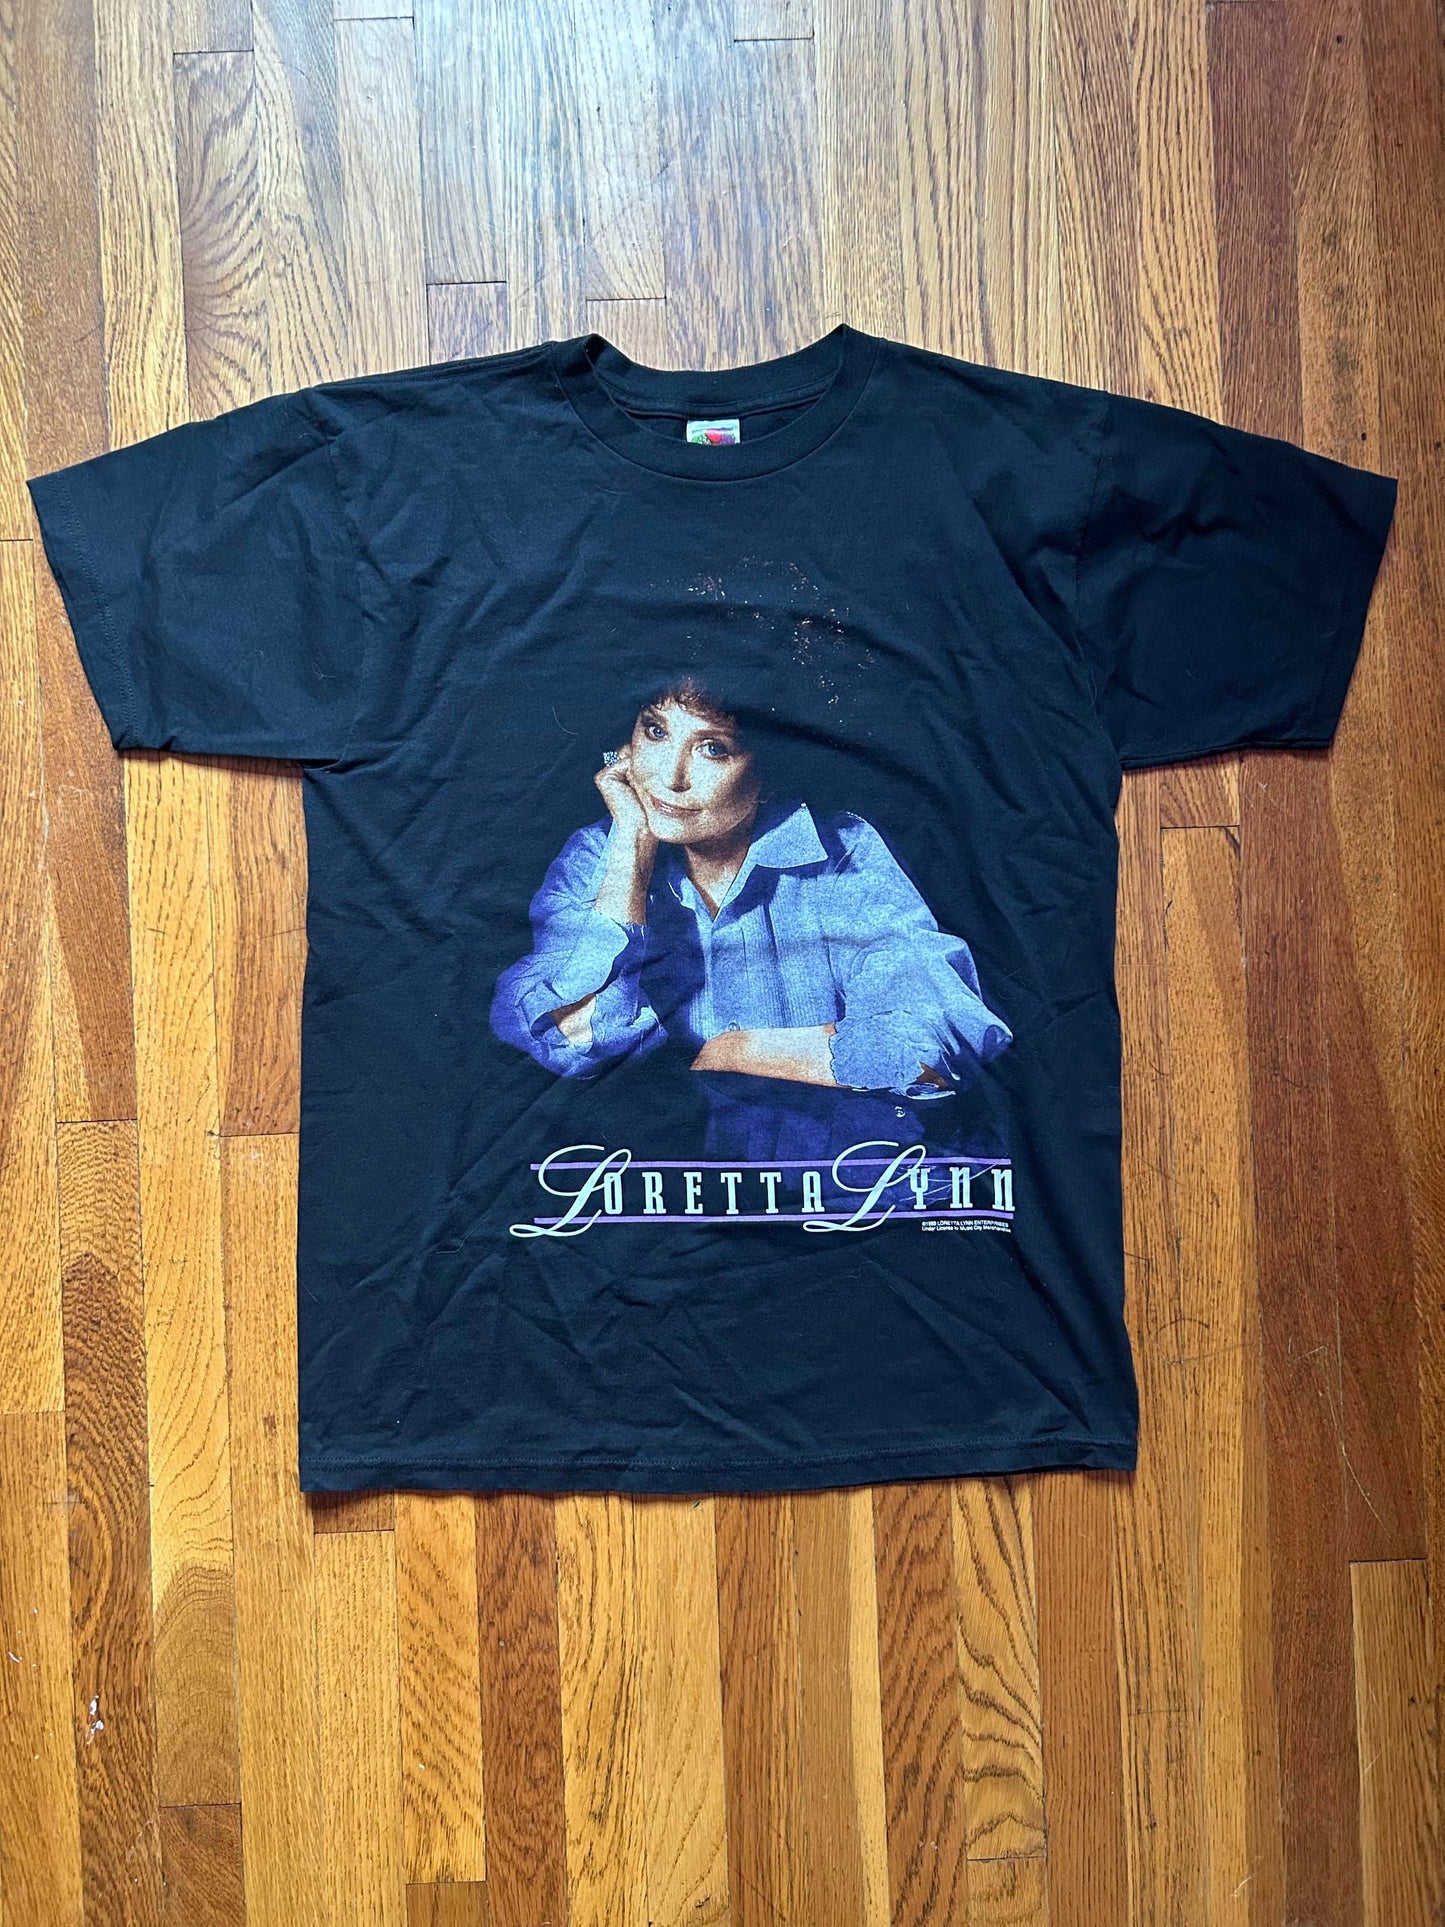 1999 Loretta Lynn Tour Shirt Size - L